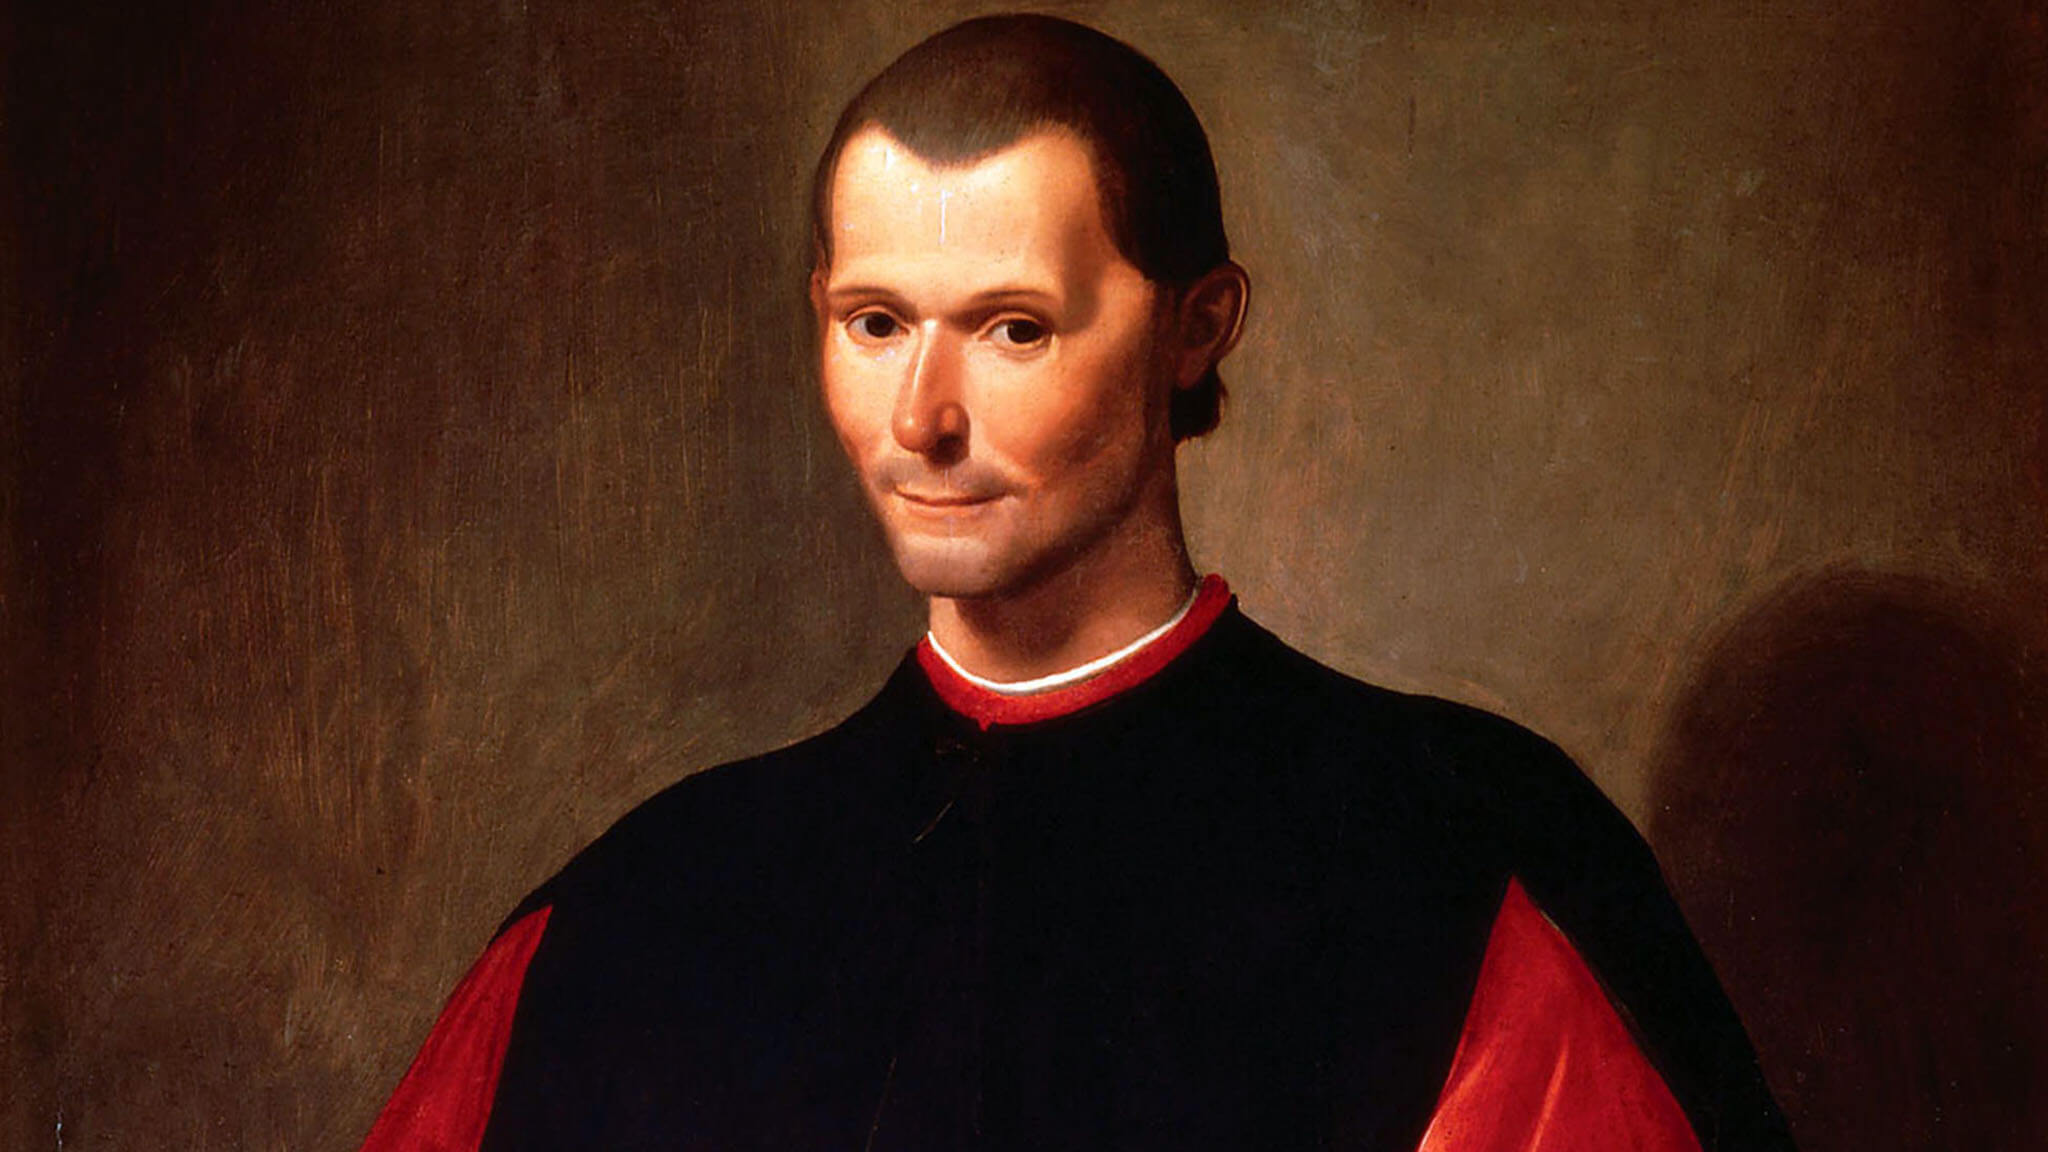 Machiavelli’nin Ahlak Anlayışı ve İnsan Doğası Üzerine Yaklaşımlarının Realist Teori Bağlamında İncelenmesi